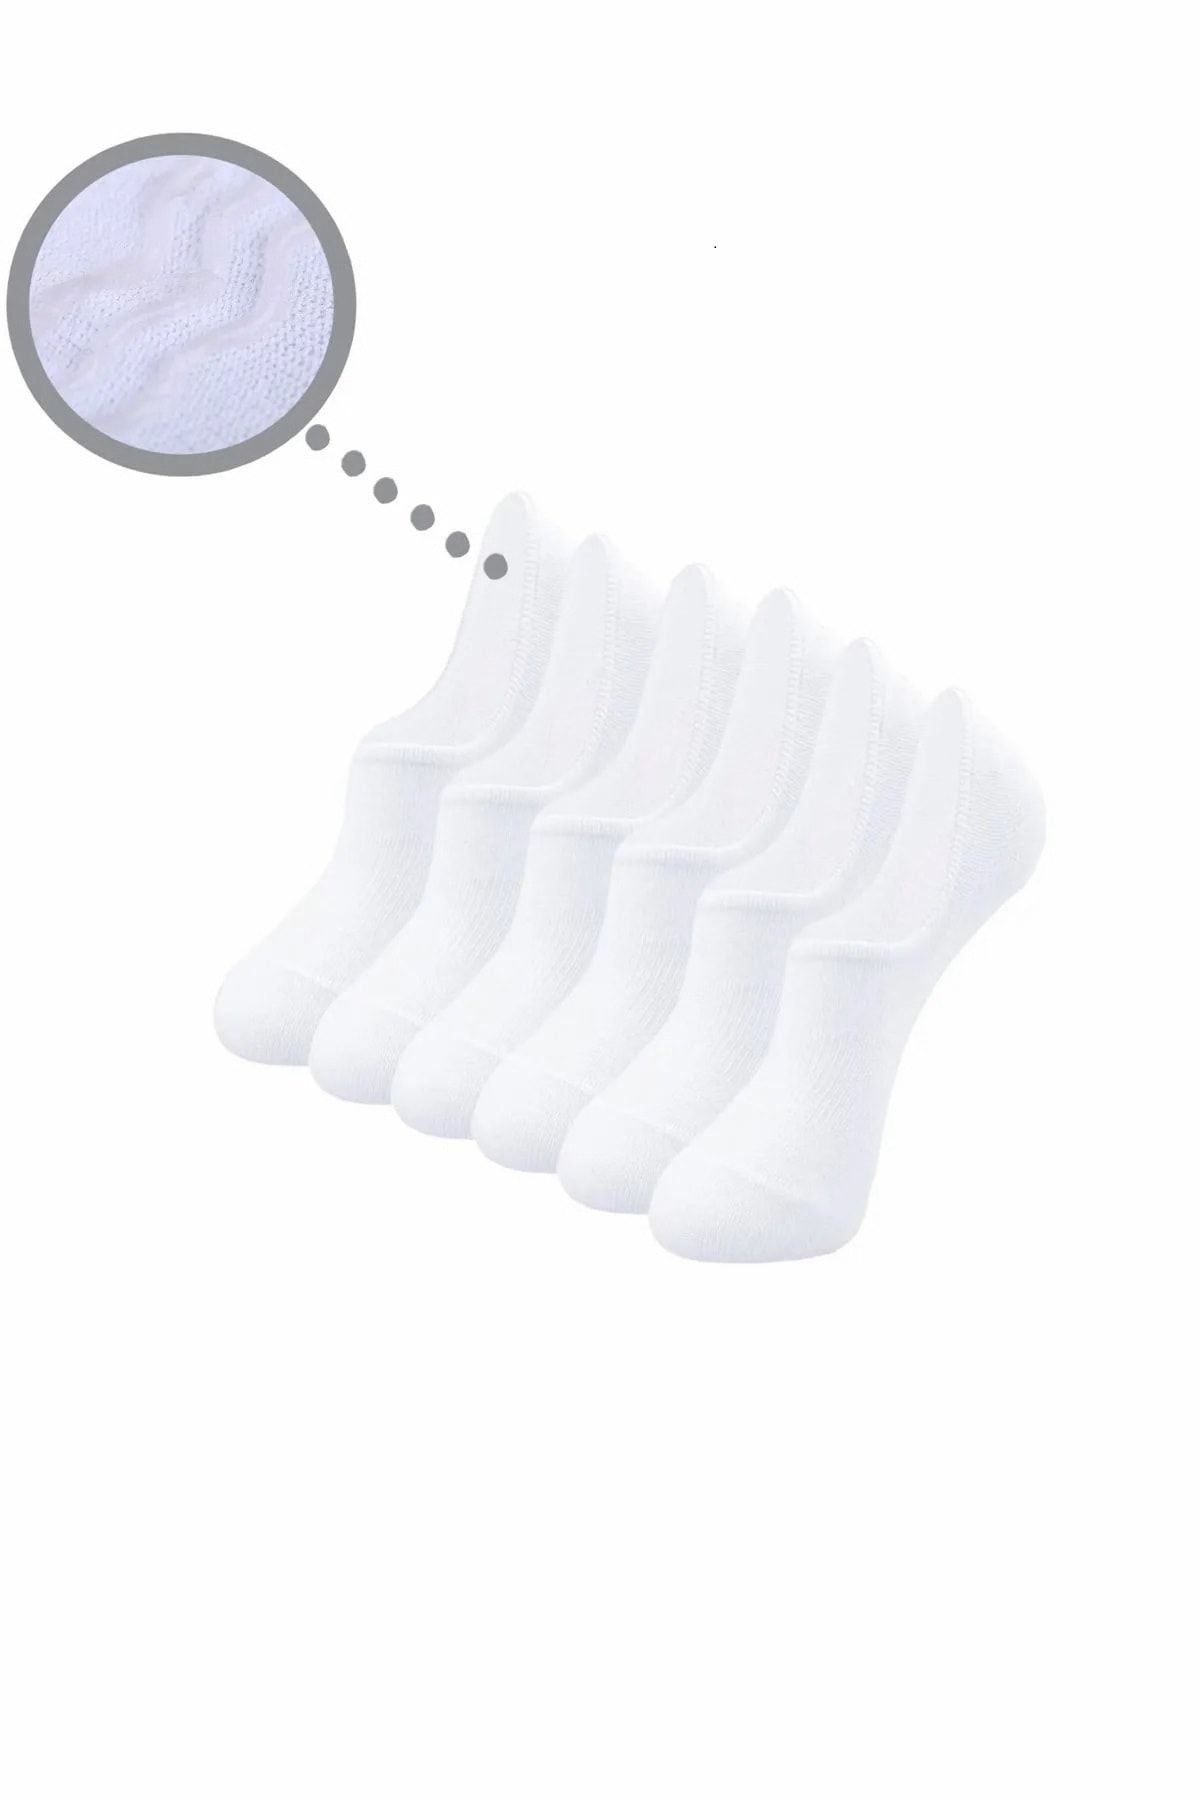 Pacman (6 ÇİFT) Erkek Babet (SİLİKONLU) Pamuklu Çorap - Beyaz